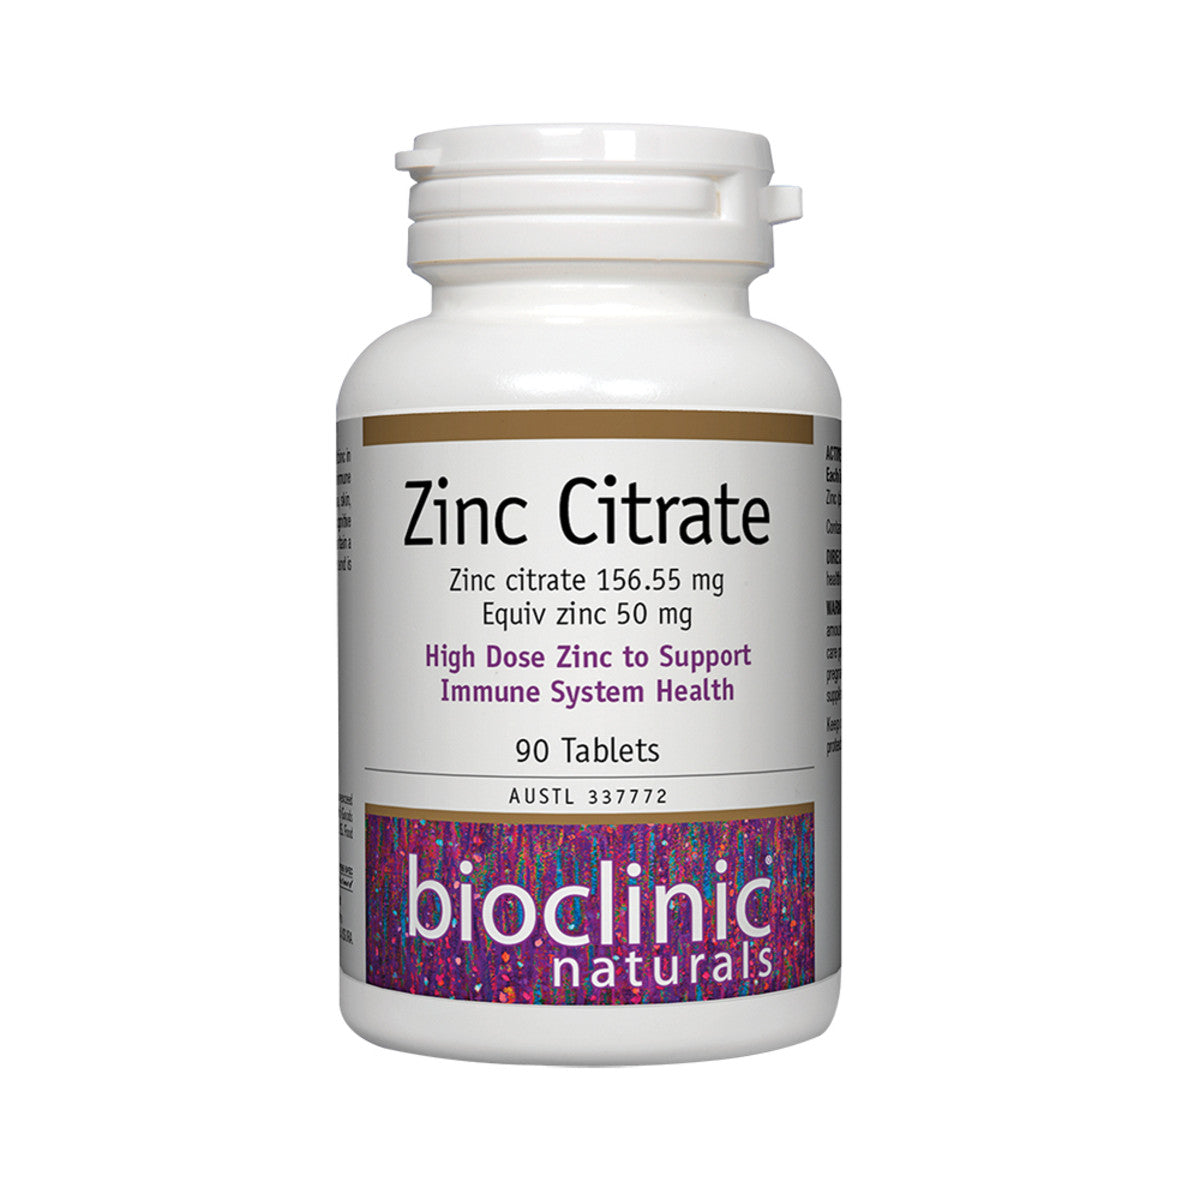 Bioclinic Naturals - Zinc Citrate